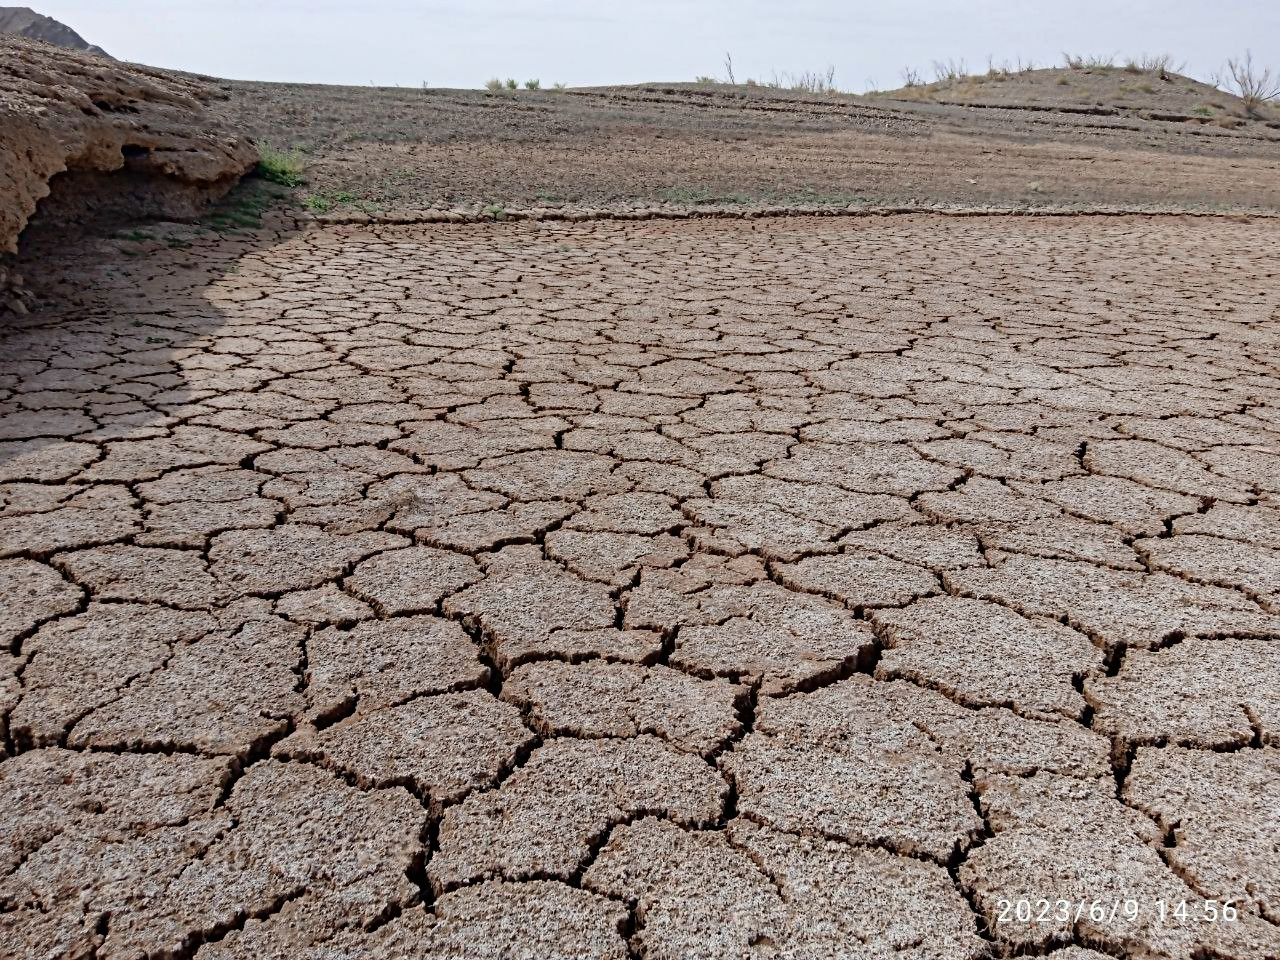 photo_۲۰۲۳-۰۶-۱۰_۰۳-۱۶-۵۰.jpg تصویری  تلخ از خشک شدن سدشهید یعقوبی 
درضلع شمال غربی سنگان بعلت خشکسالی سال 1402
جمعه 1402/3/19 by mohsen dehbashi